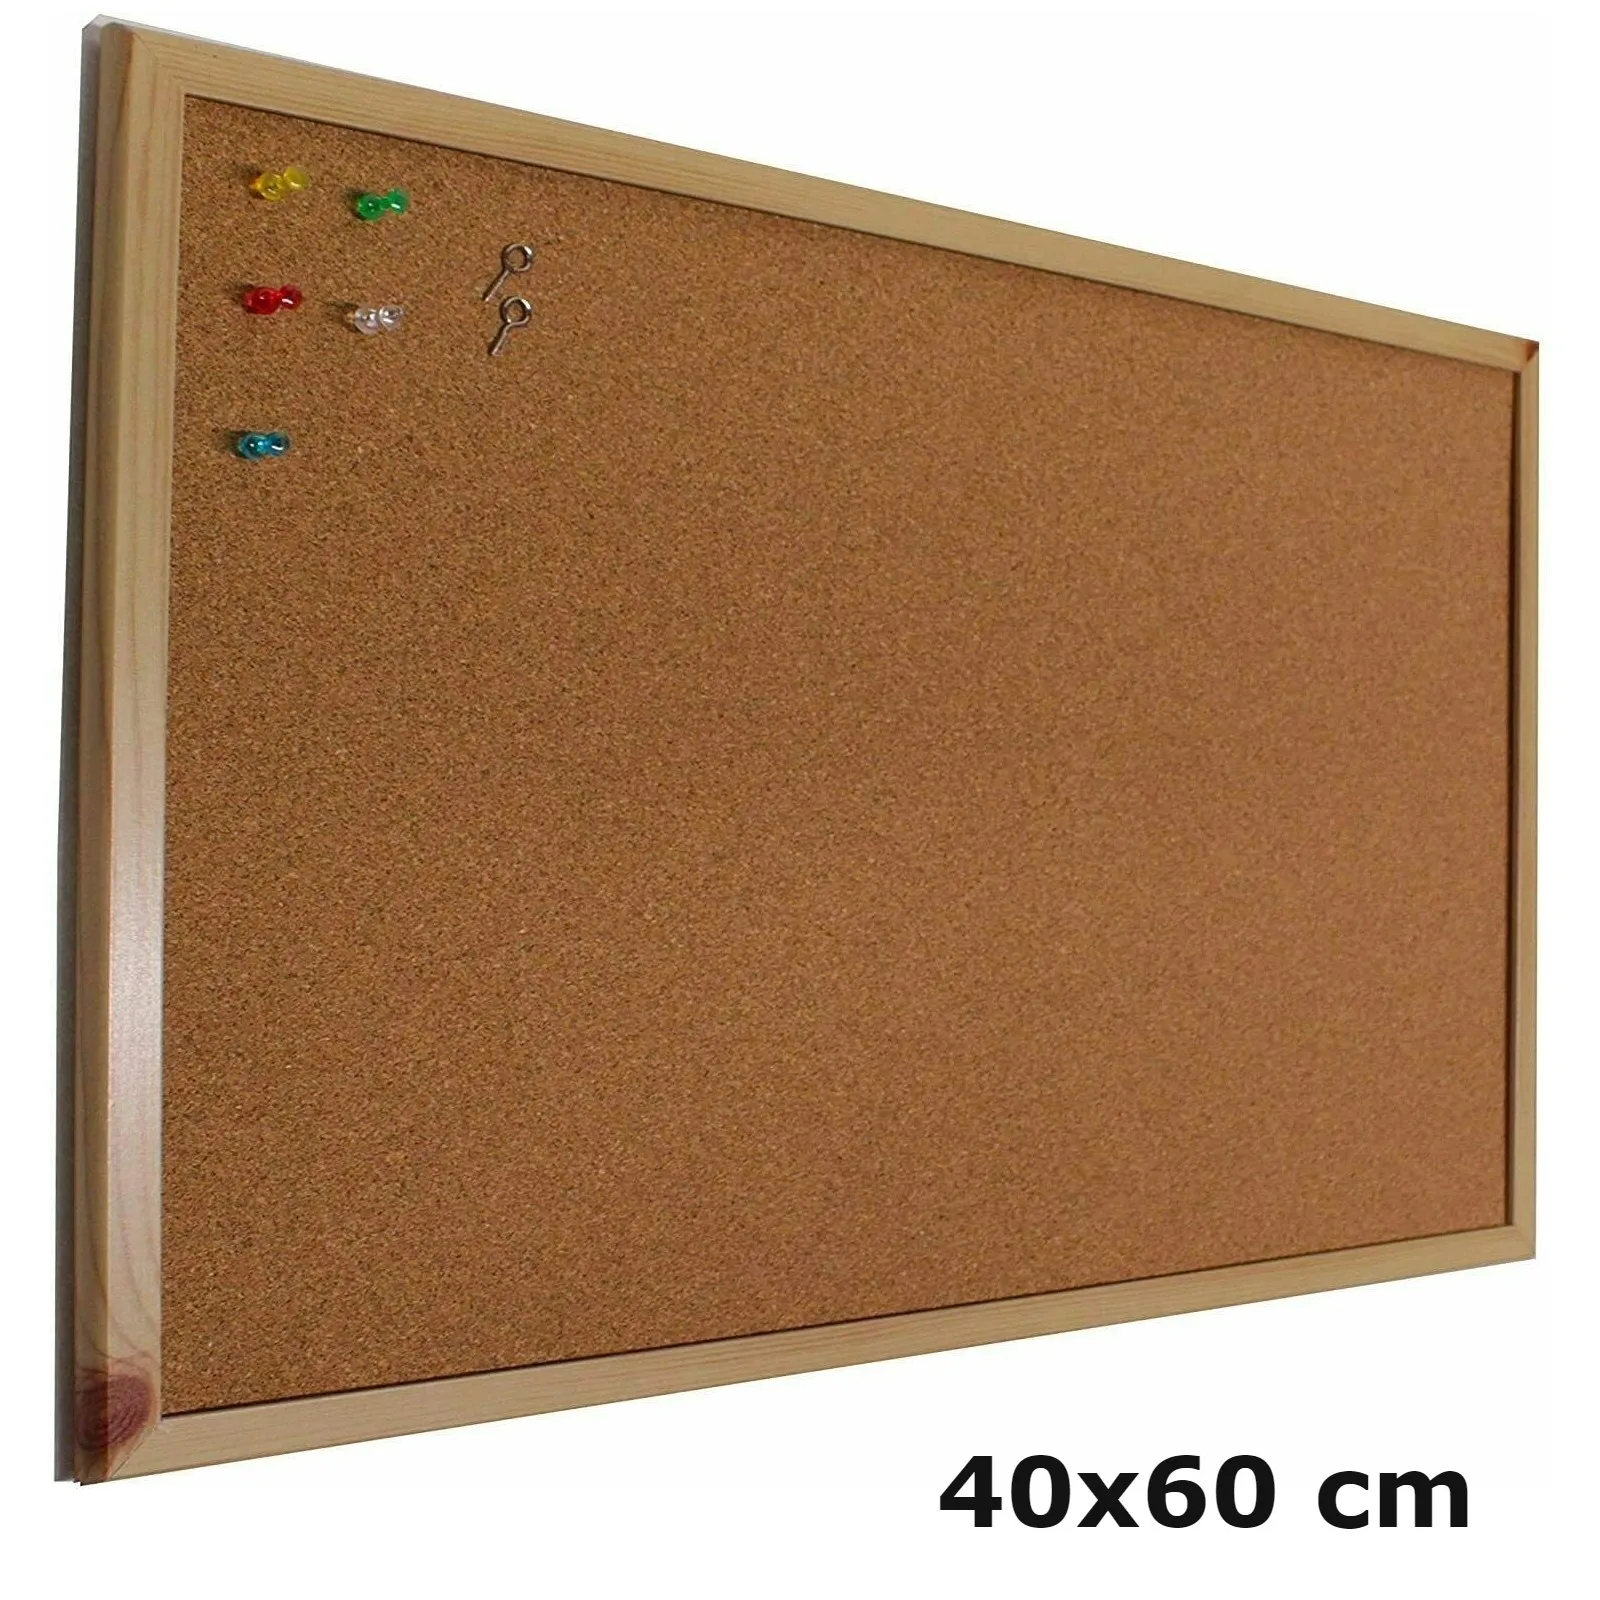 MAXIA MARKET - Tablero de corcho pared con marco madera (suro pared).  Pizarra corcho como panel o tablón calendario,mapa,fotos